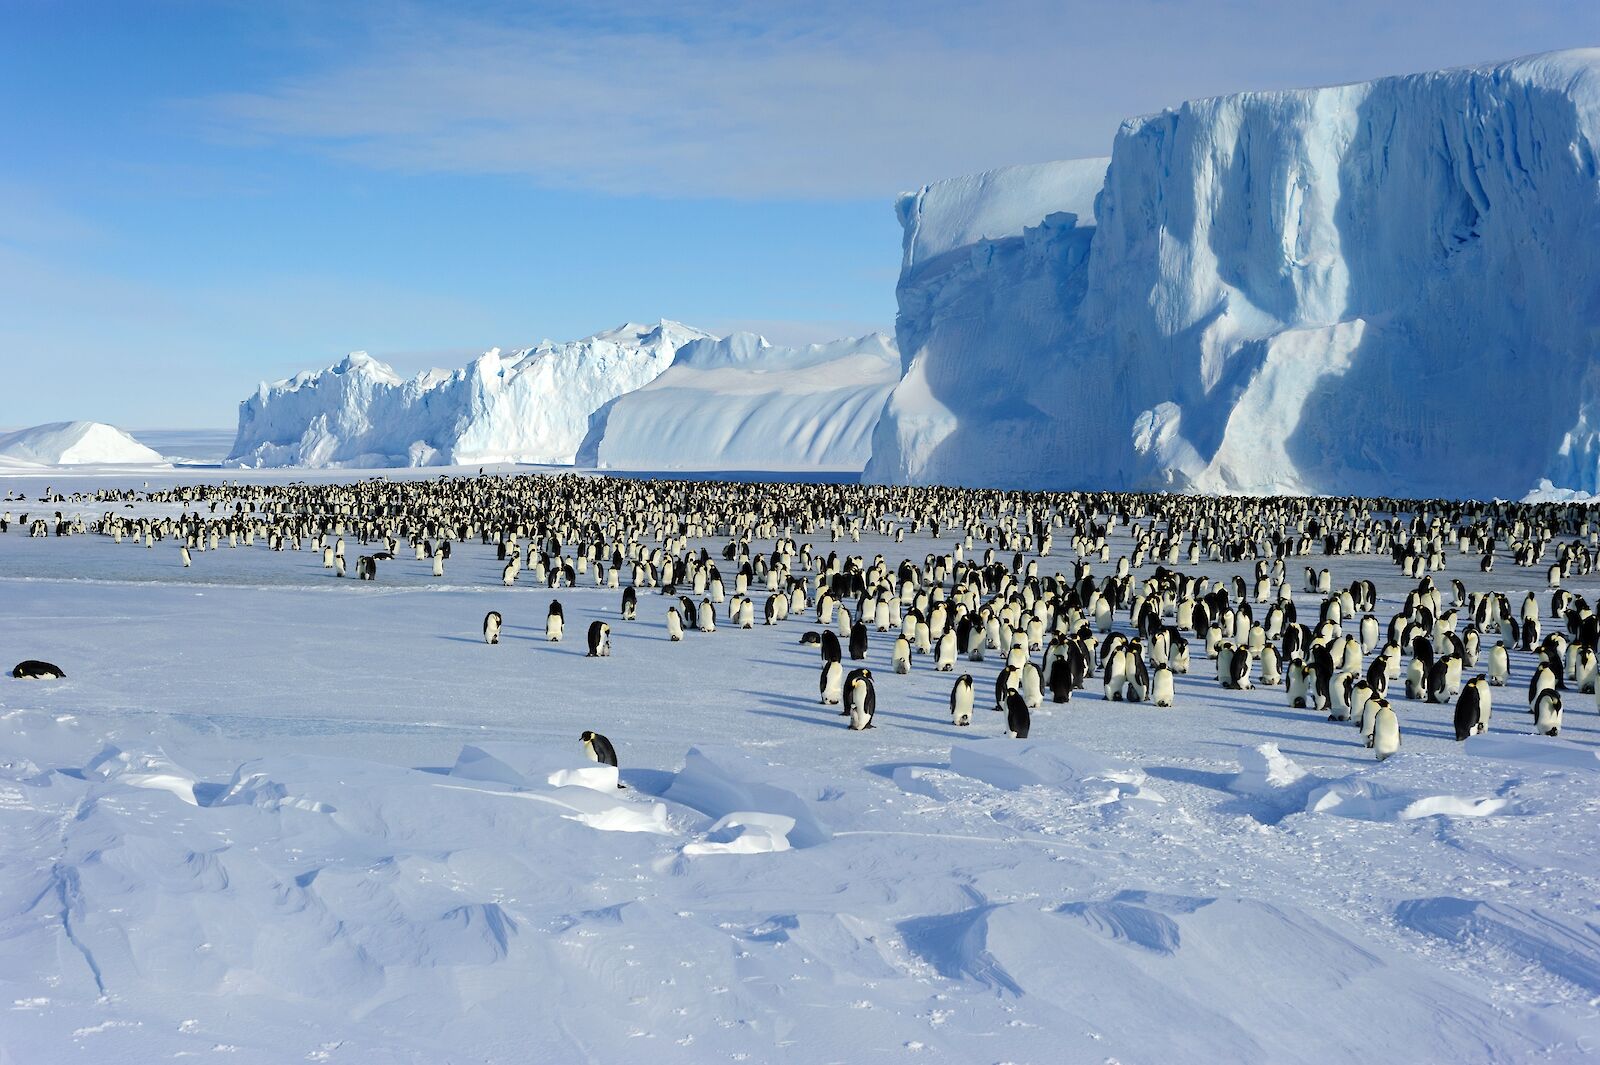 Colônia de pinguins imperadores na Antártica: espécie precisa do gelo marinho para se reproduzir e degelo acelerado e inesperado no verão causou milhares de mortes de filhotes (Foto: Patrick James / Australian Antarctic Division)